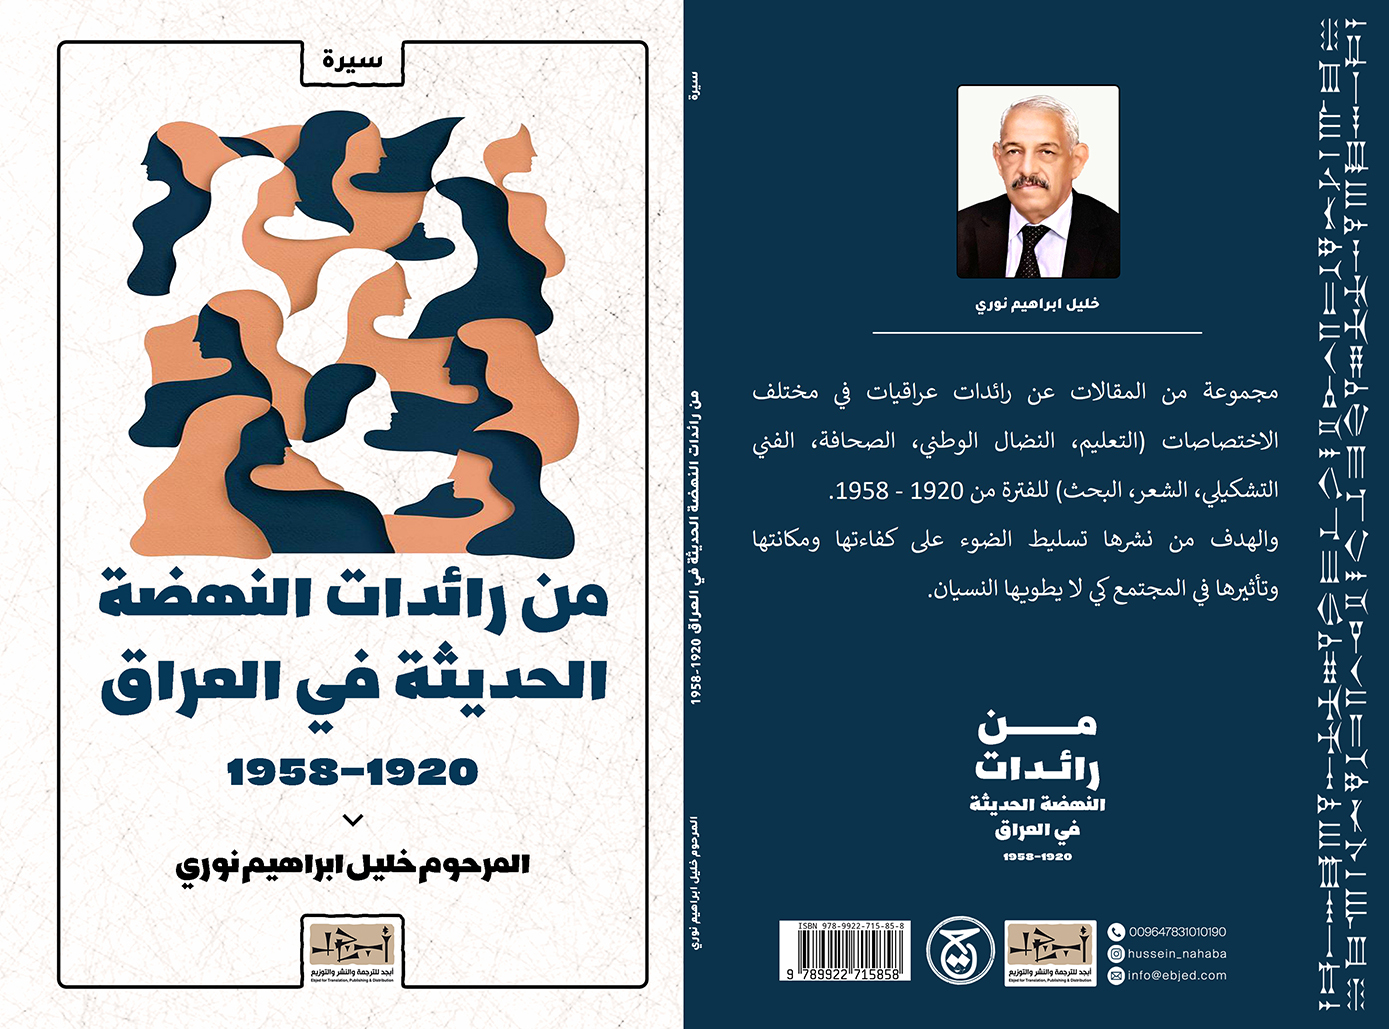 الكتاب: من رائدات النهضة الحديثة في العراق 1920- 1958      المؤلف:  المرحوم خليل ابراهيم نوري التصنيف: سيرة